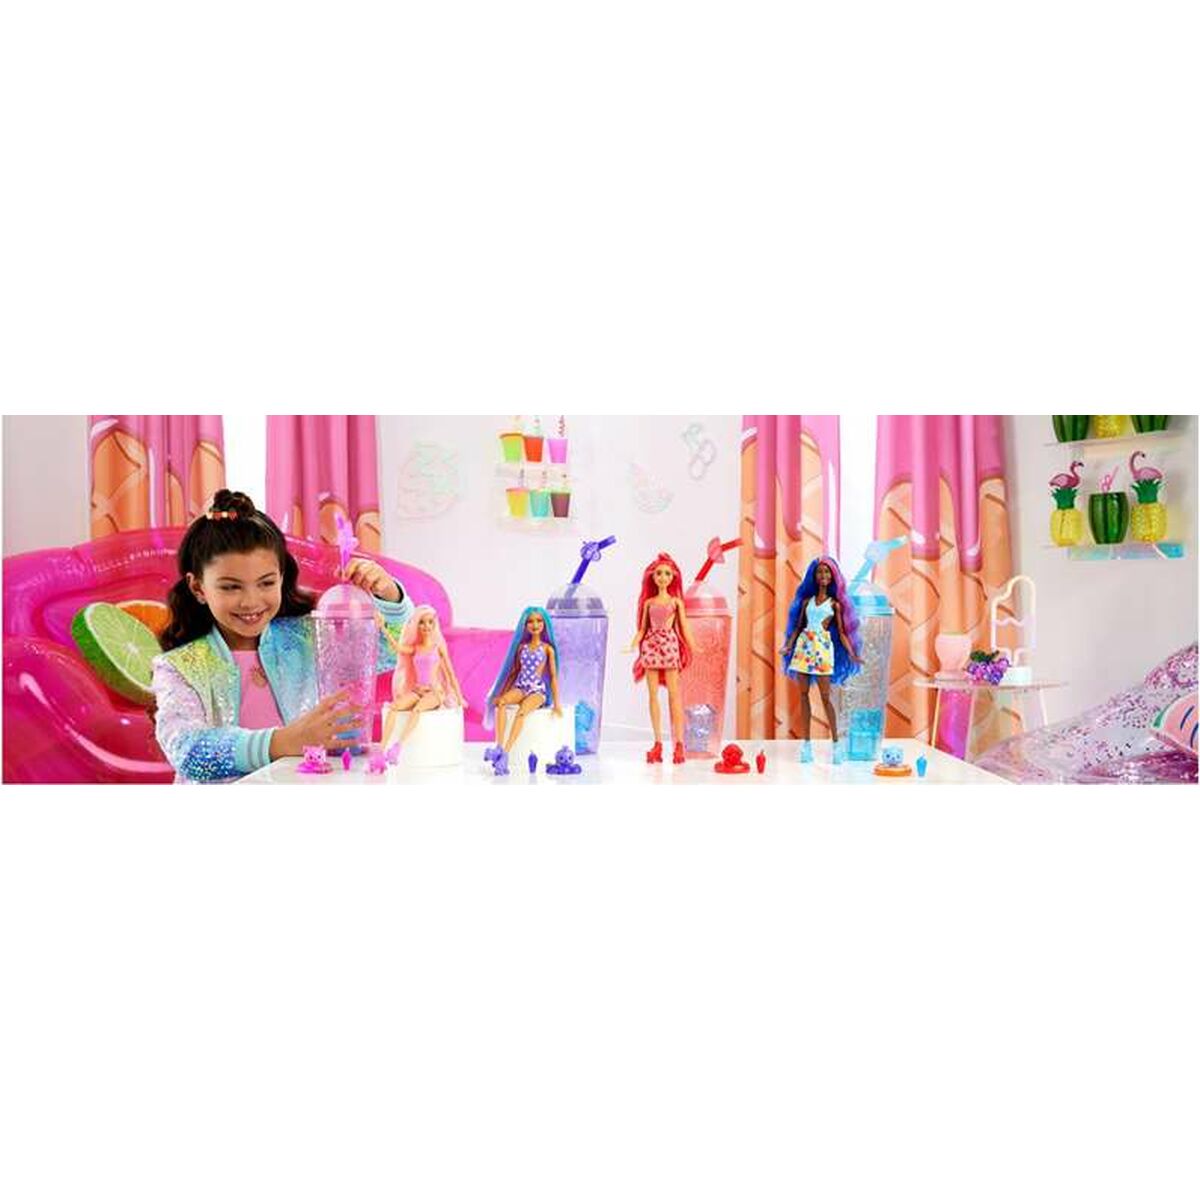 Docka Barbie Pop Reveal Frukter-Leksaker och spel, Dockor och tillbehör-Barbie-peaceofhome.se